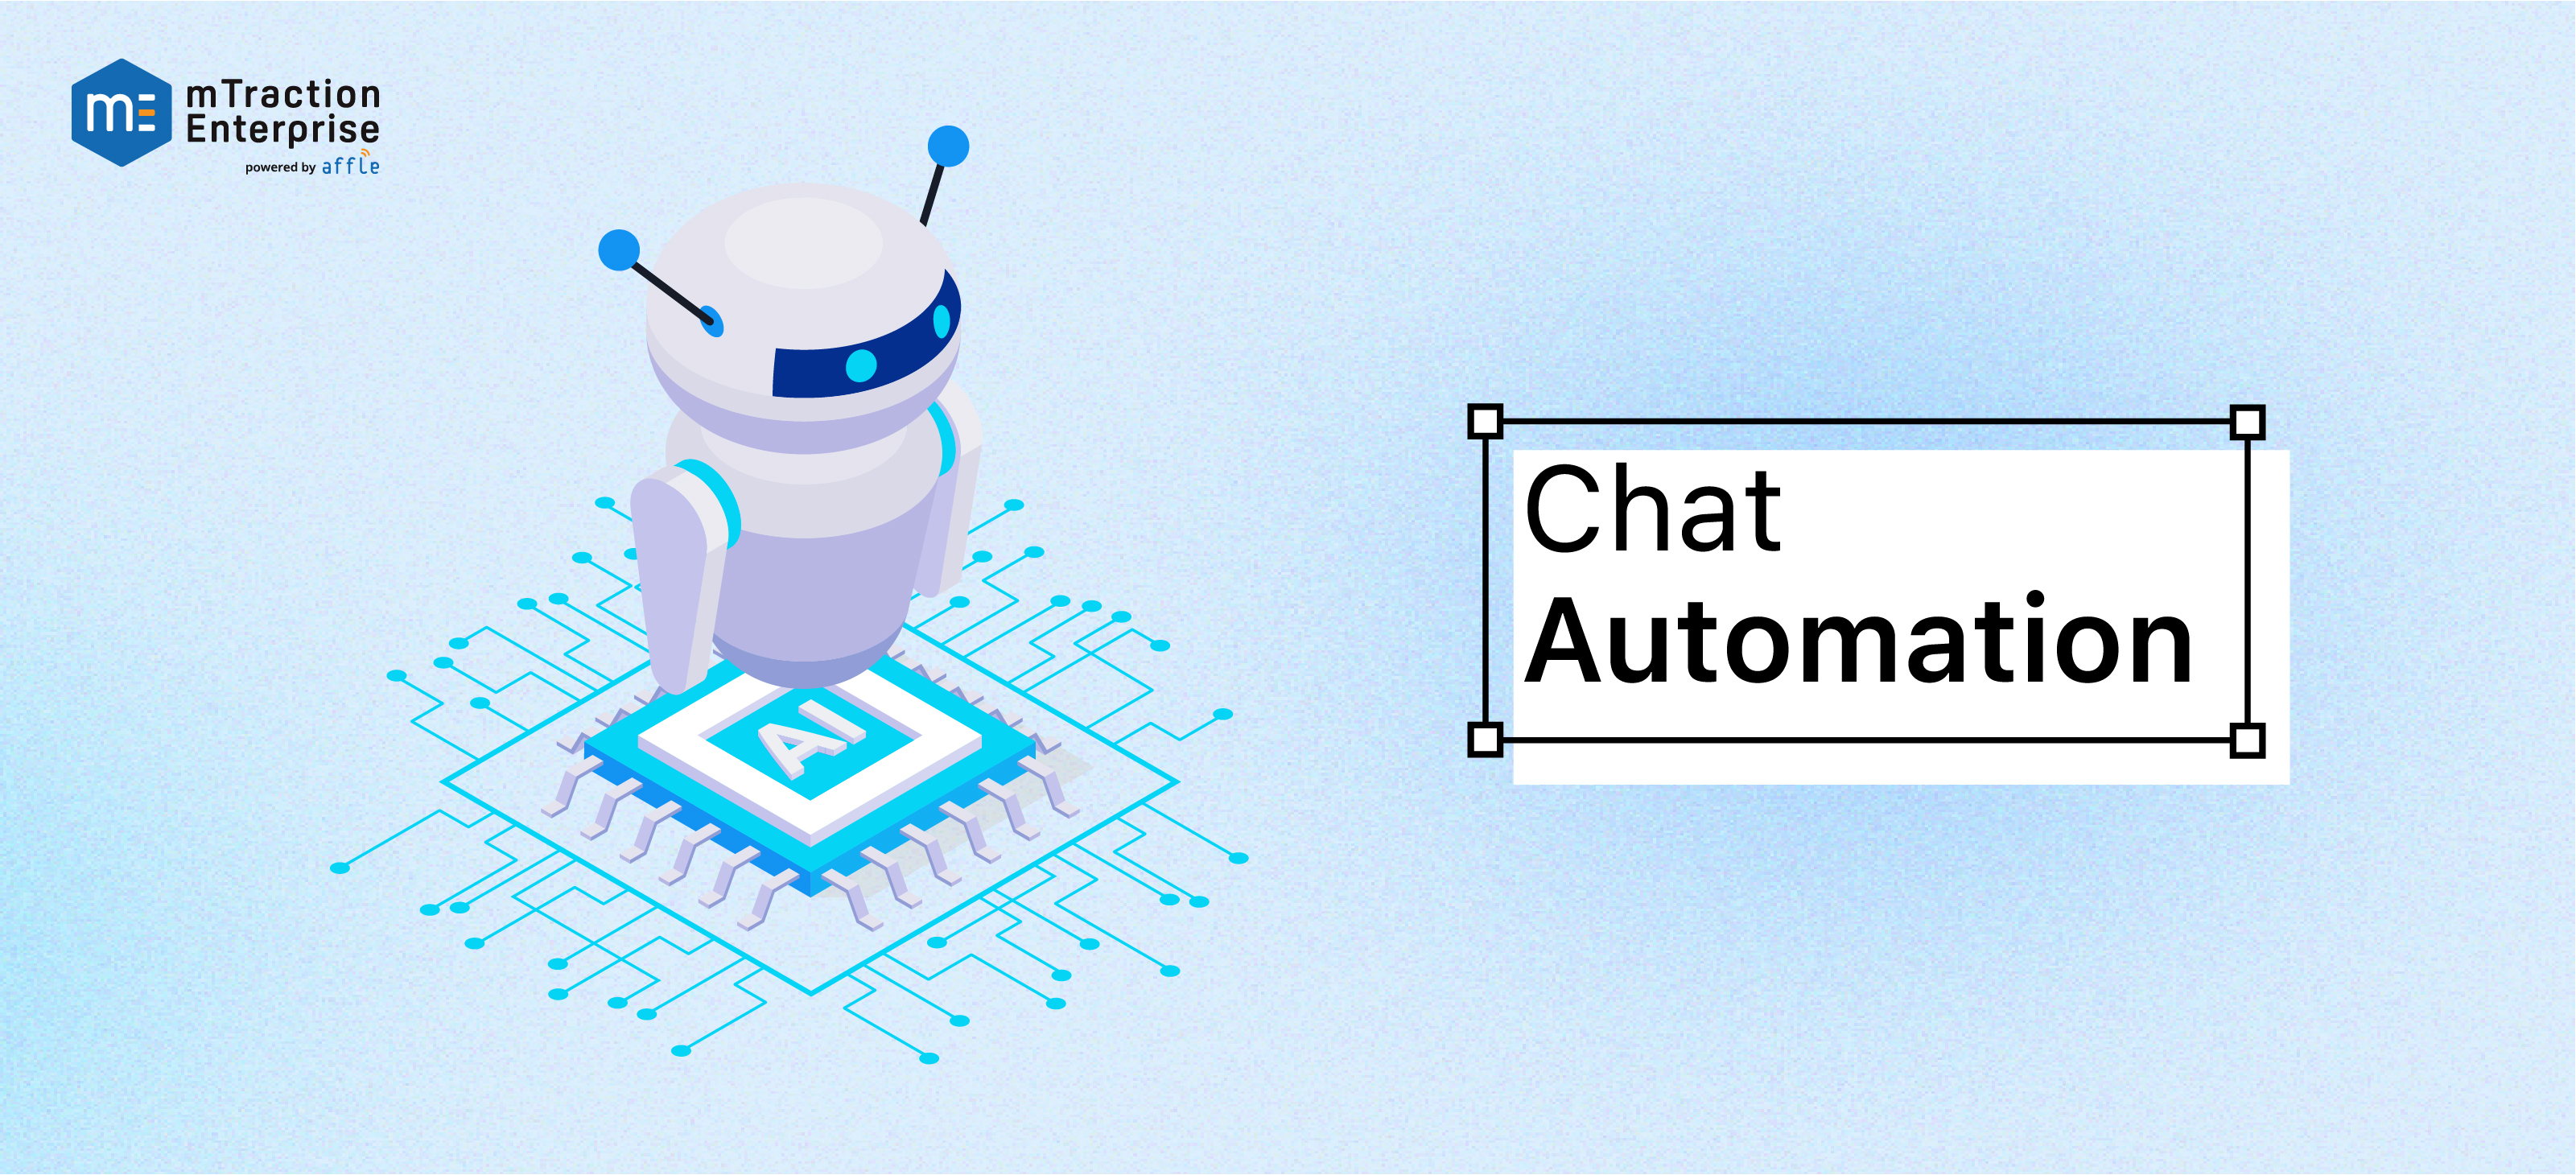 chat automation via healthcare mobile app development